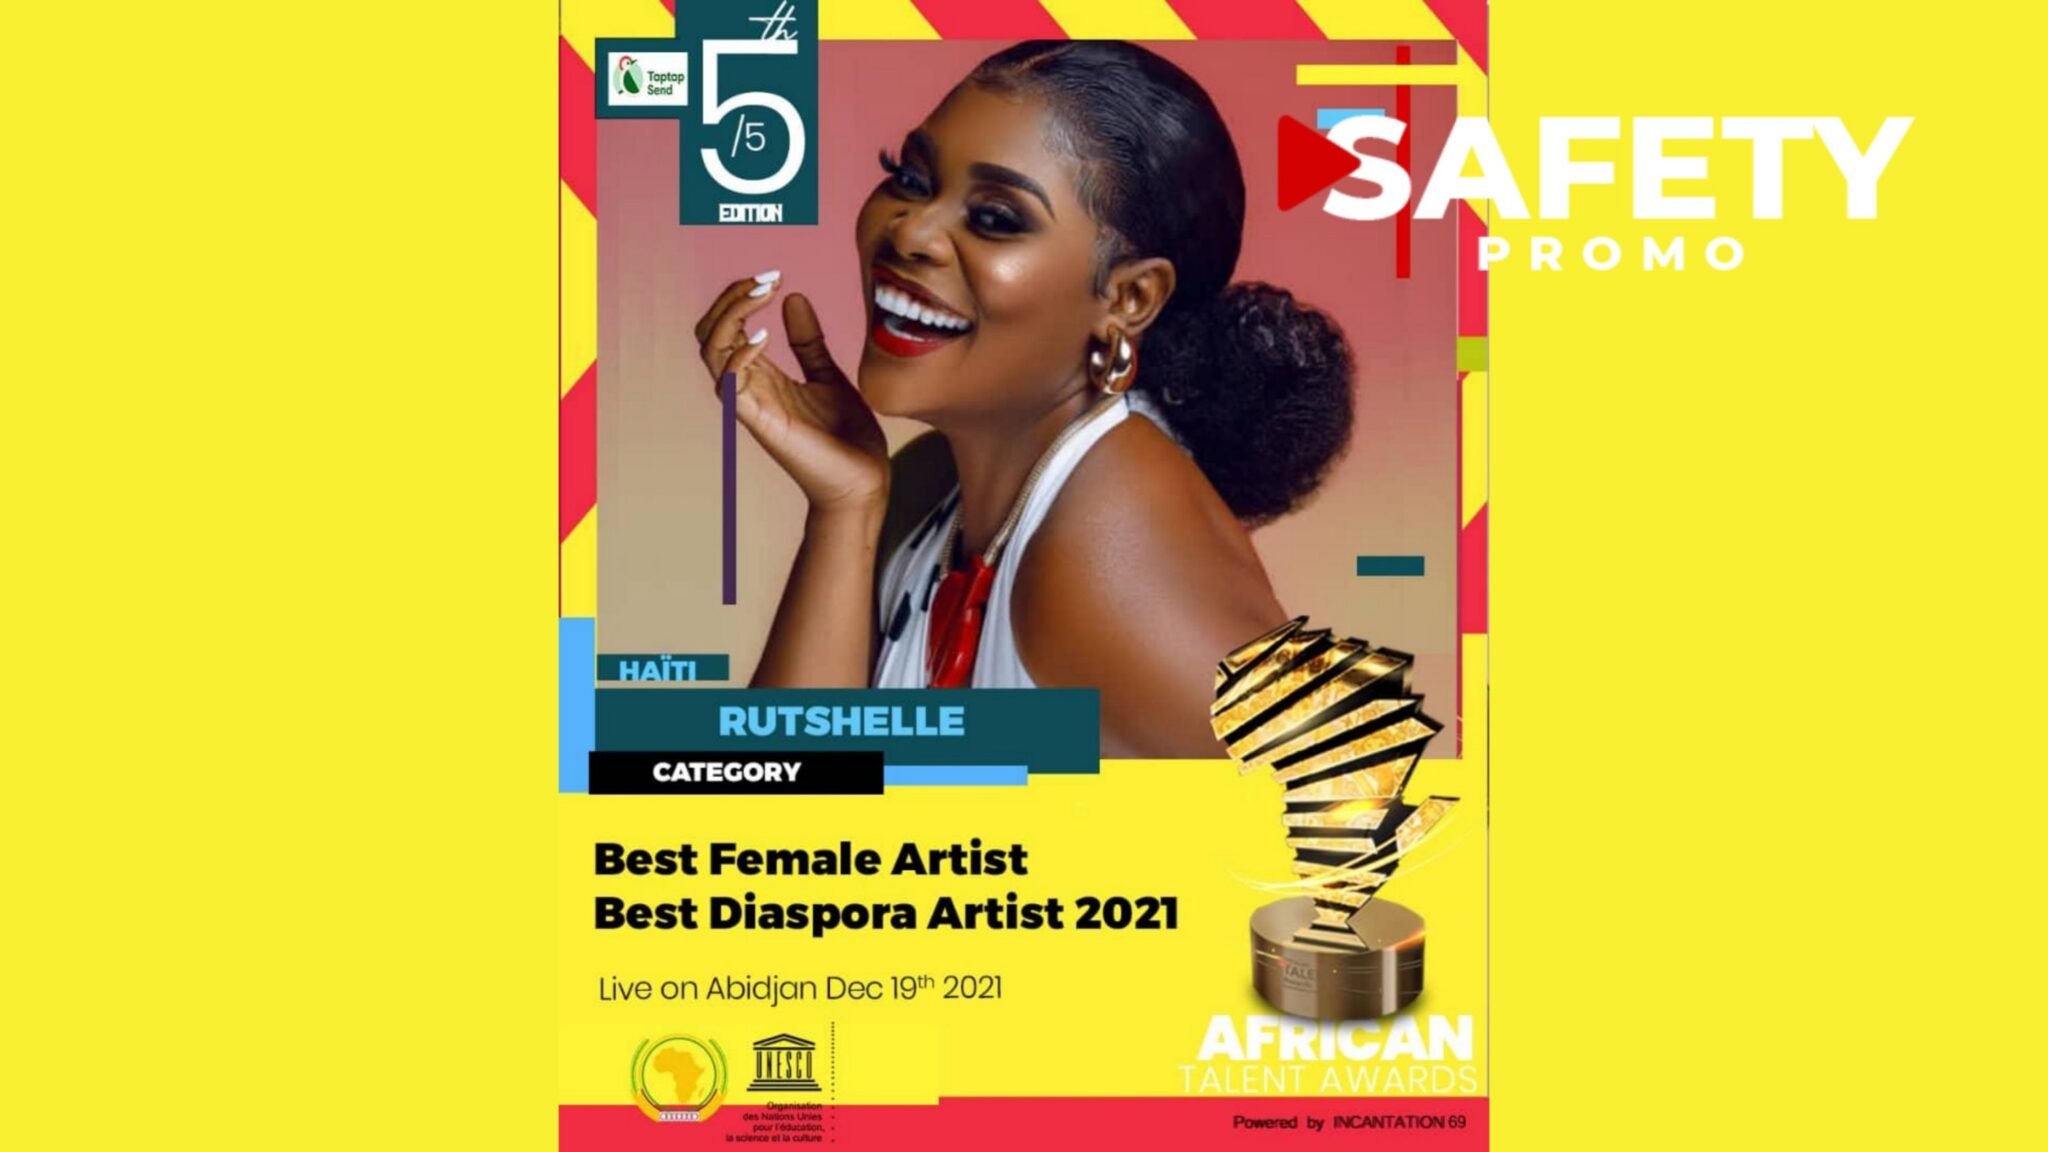 Africa Talent Awards de la Côte d’Ivoire: Rutshelle est nominée dans les catégories de “Best Female Artist 2021” et “Best Diaspora Artist 2021”